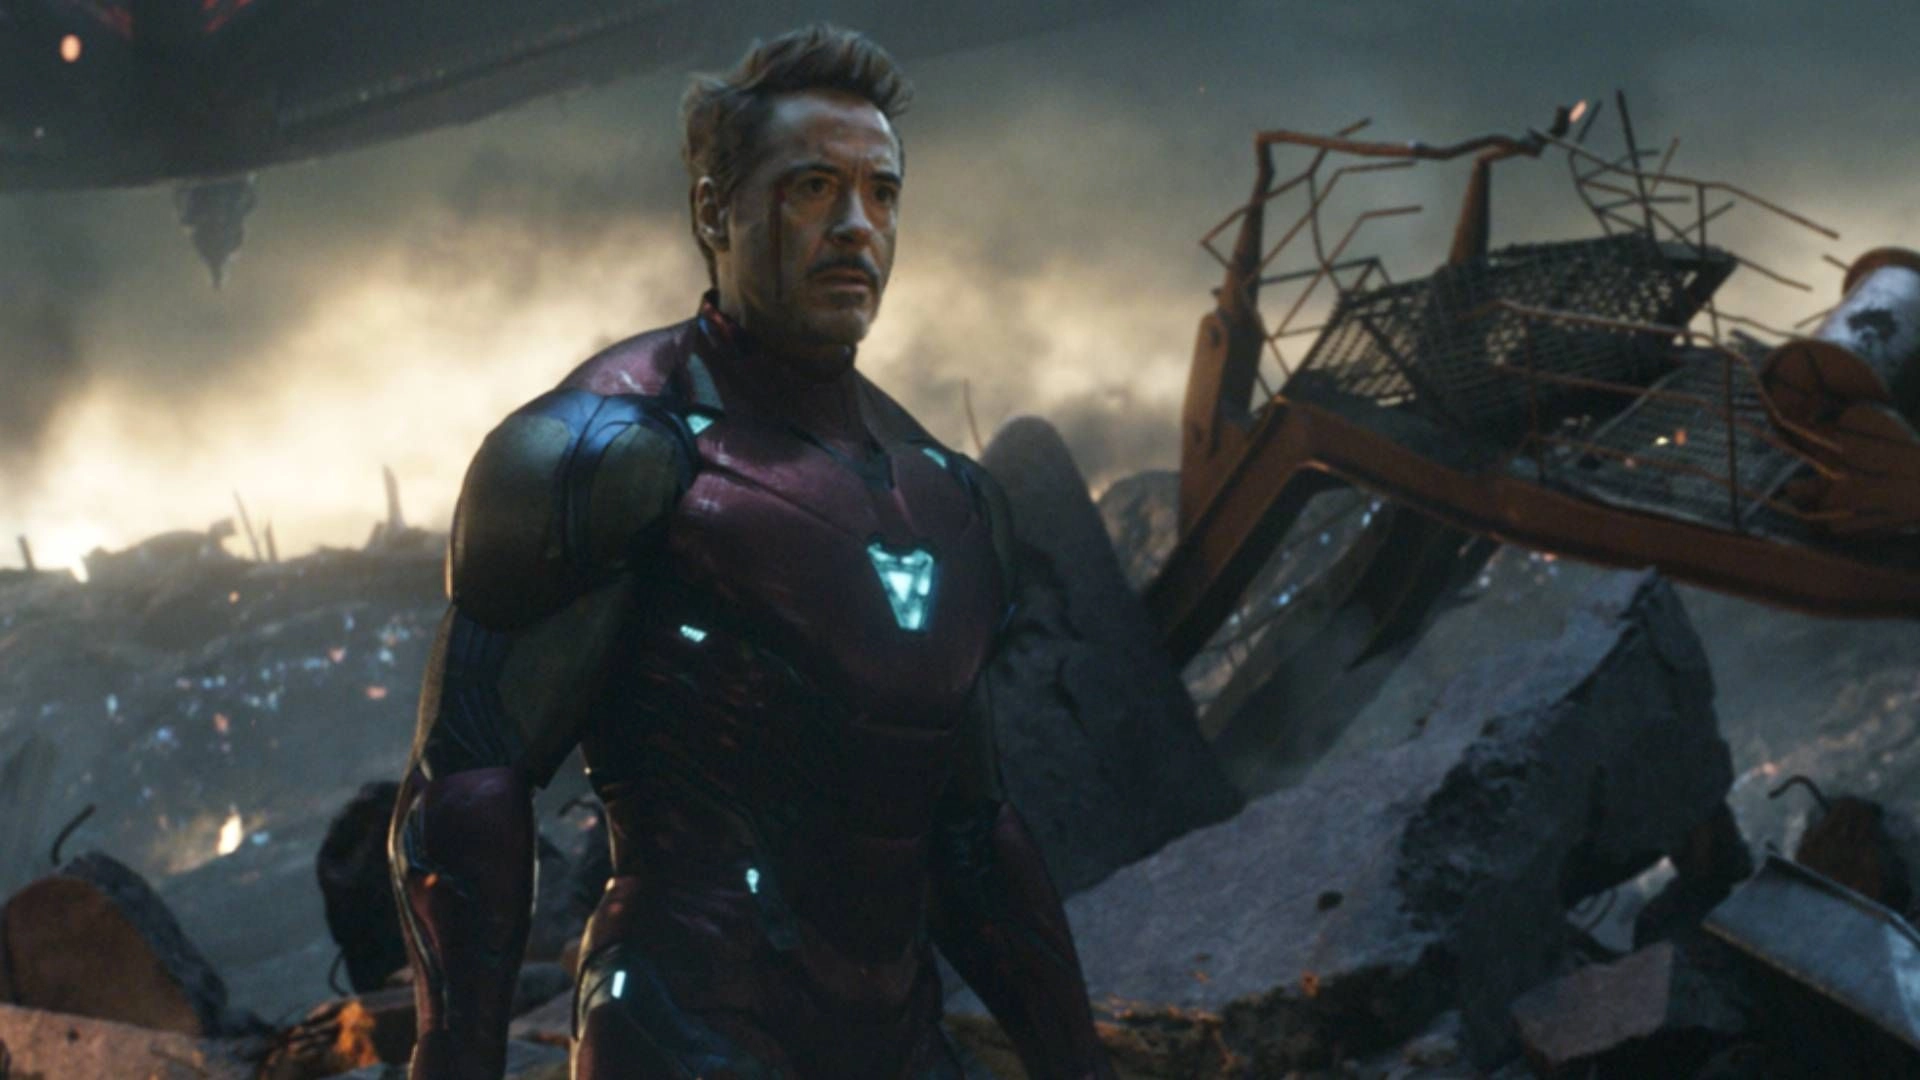 Marvel Ponders Bringing Back Original Avengers Cast